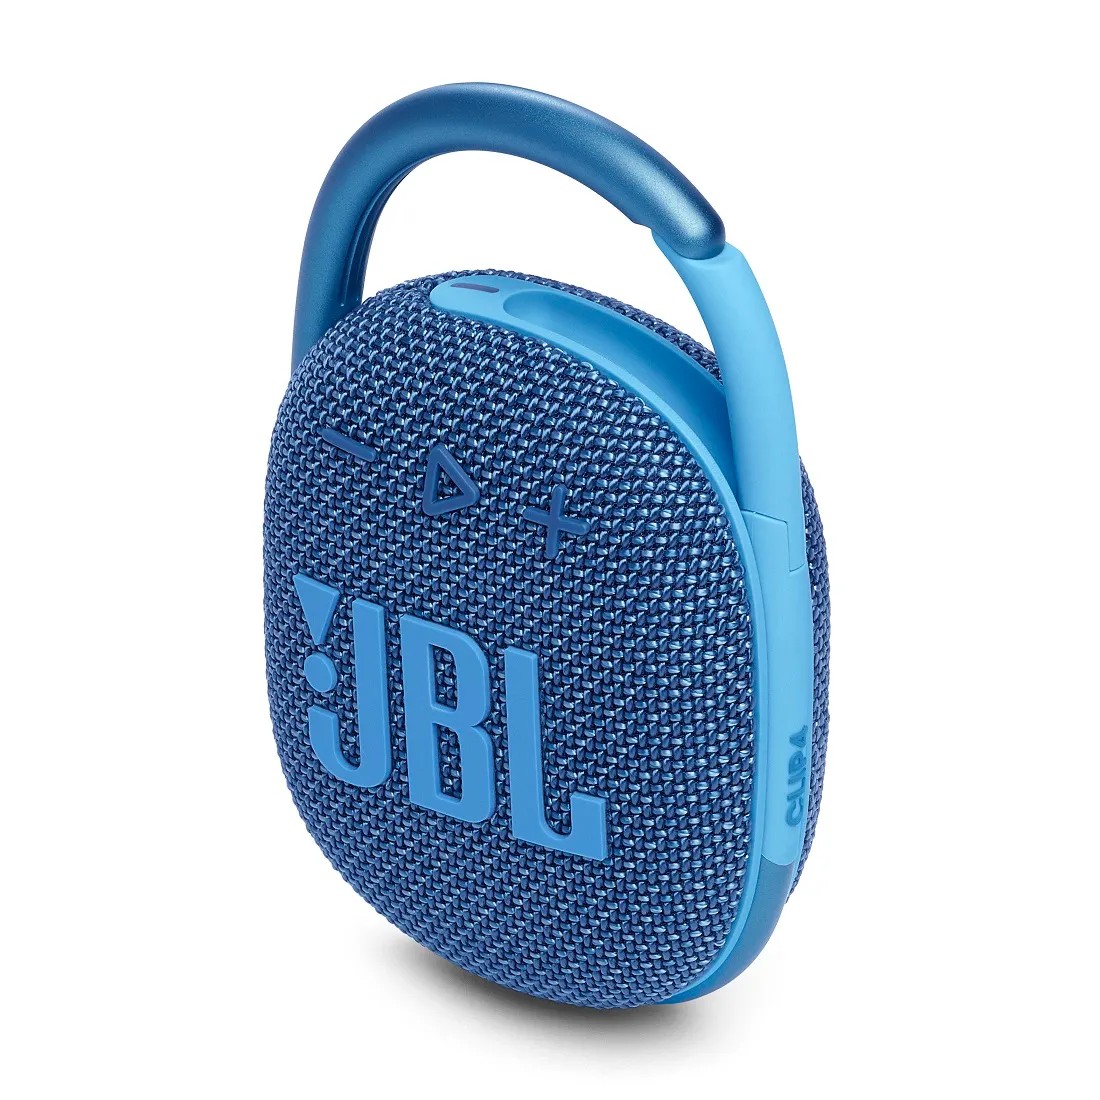 JBL CLIP 4 ECO BLUE posledný kus